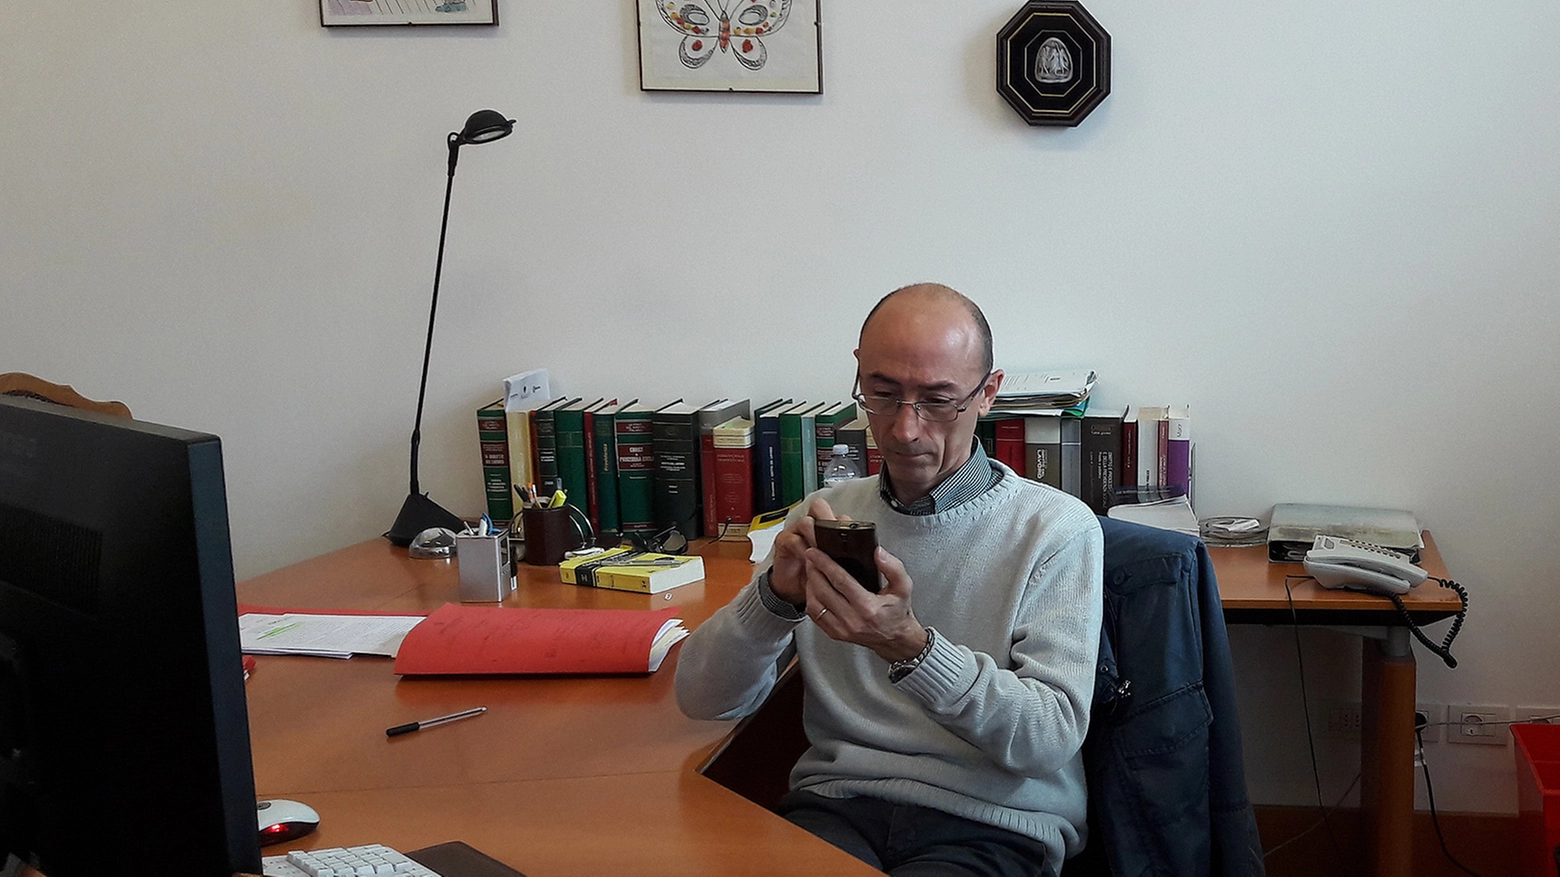 Il giudice del Lavoro Maurizio Paganelli mentre consulta l'agenda elettronica sul telefono